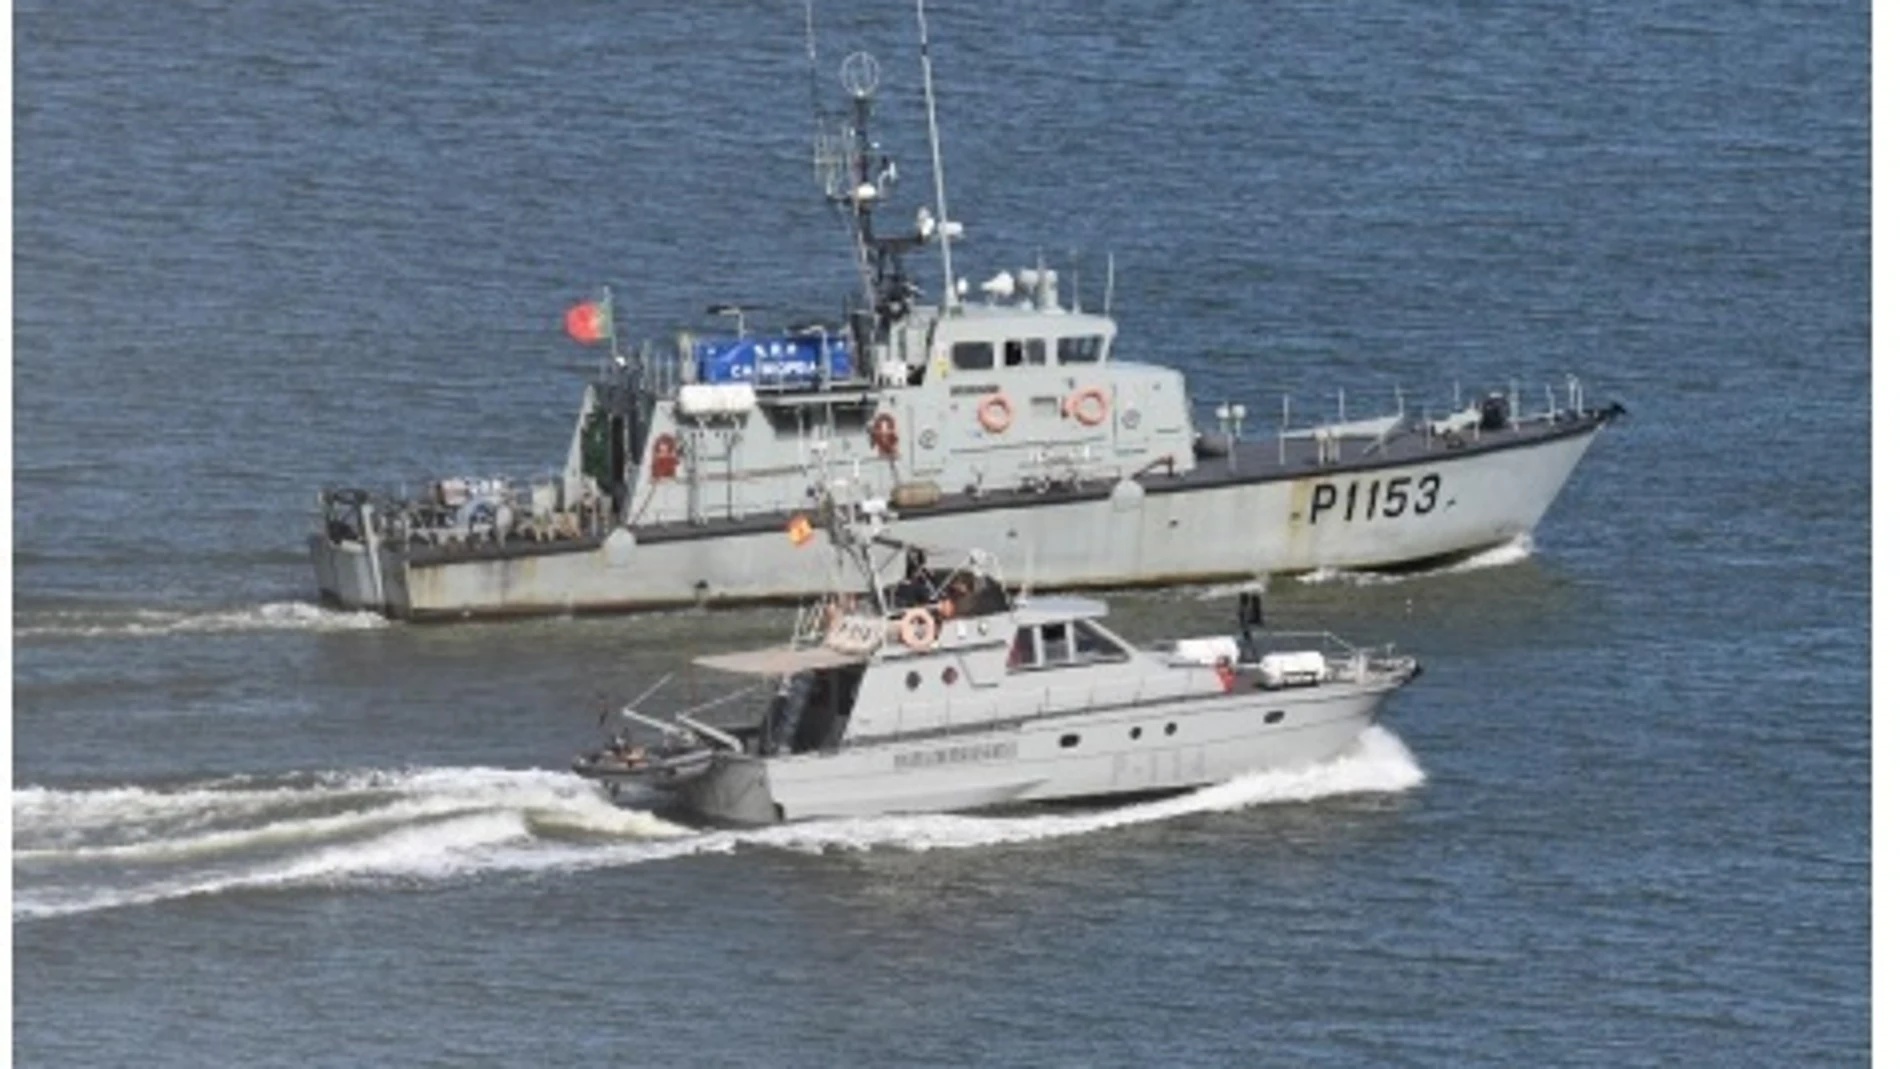 Ejercicio Marsec-24 de seguridad marítima en el río Guadiana entre la Armada y la Marinha portuguesa